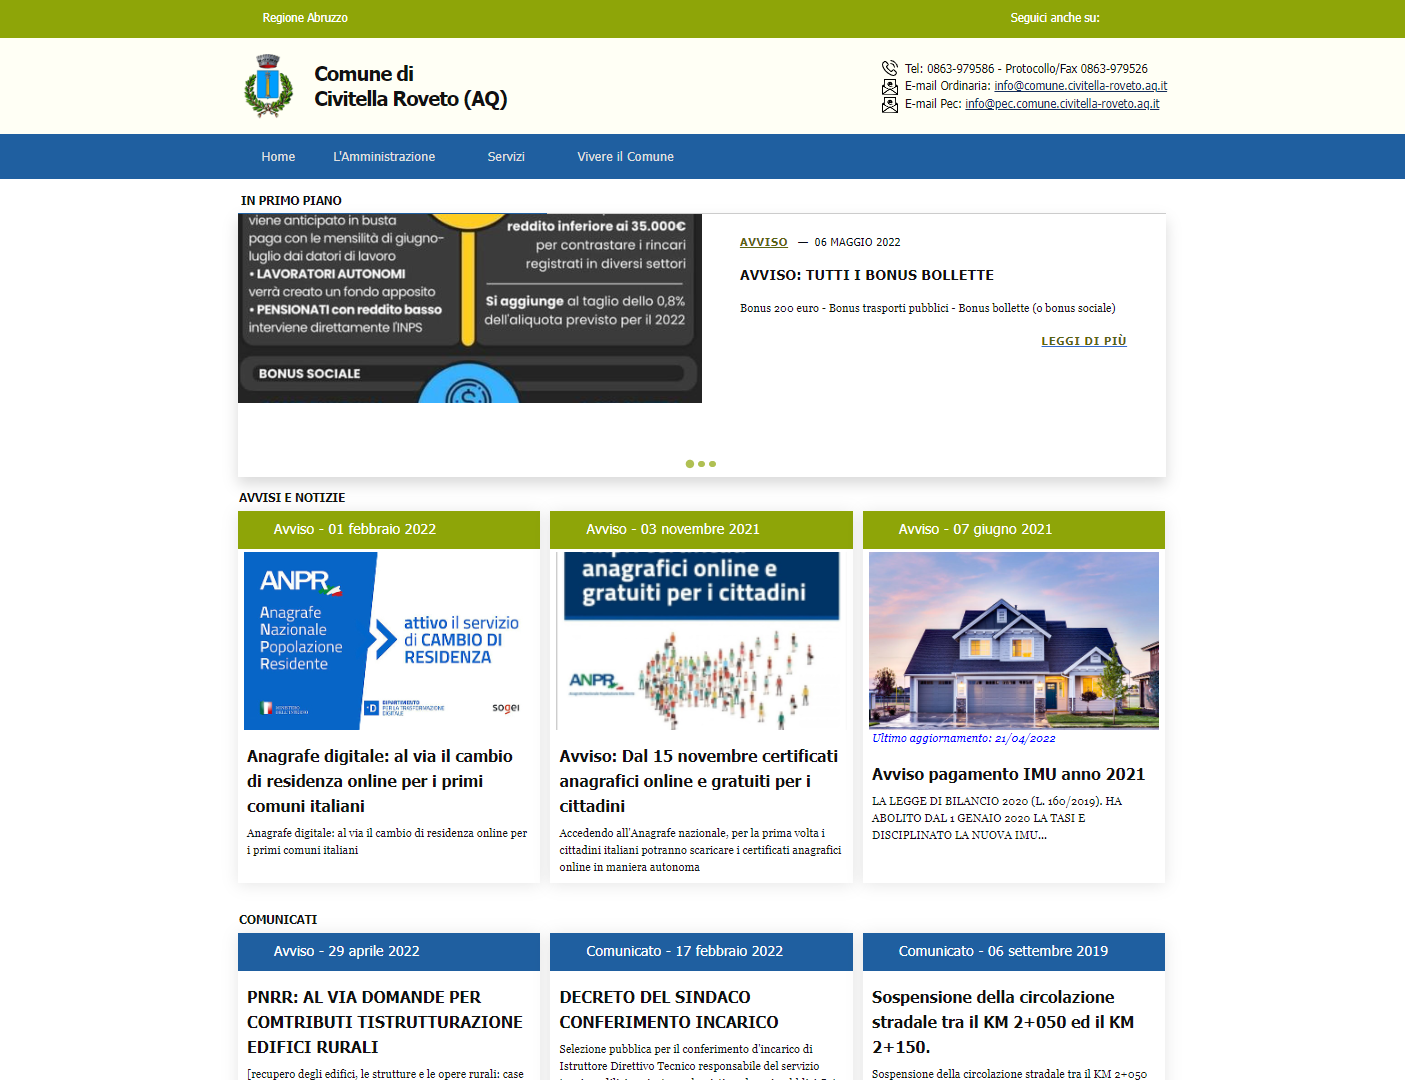 Pubblicato il nuovo sito istituzionale del Comune di Civitella Roveto